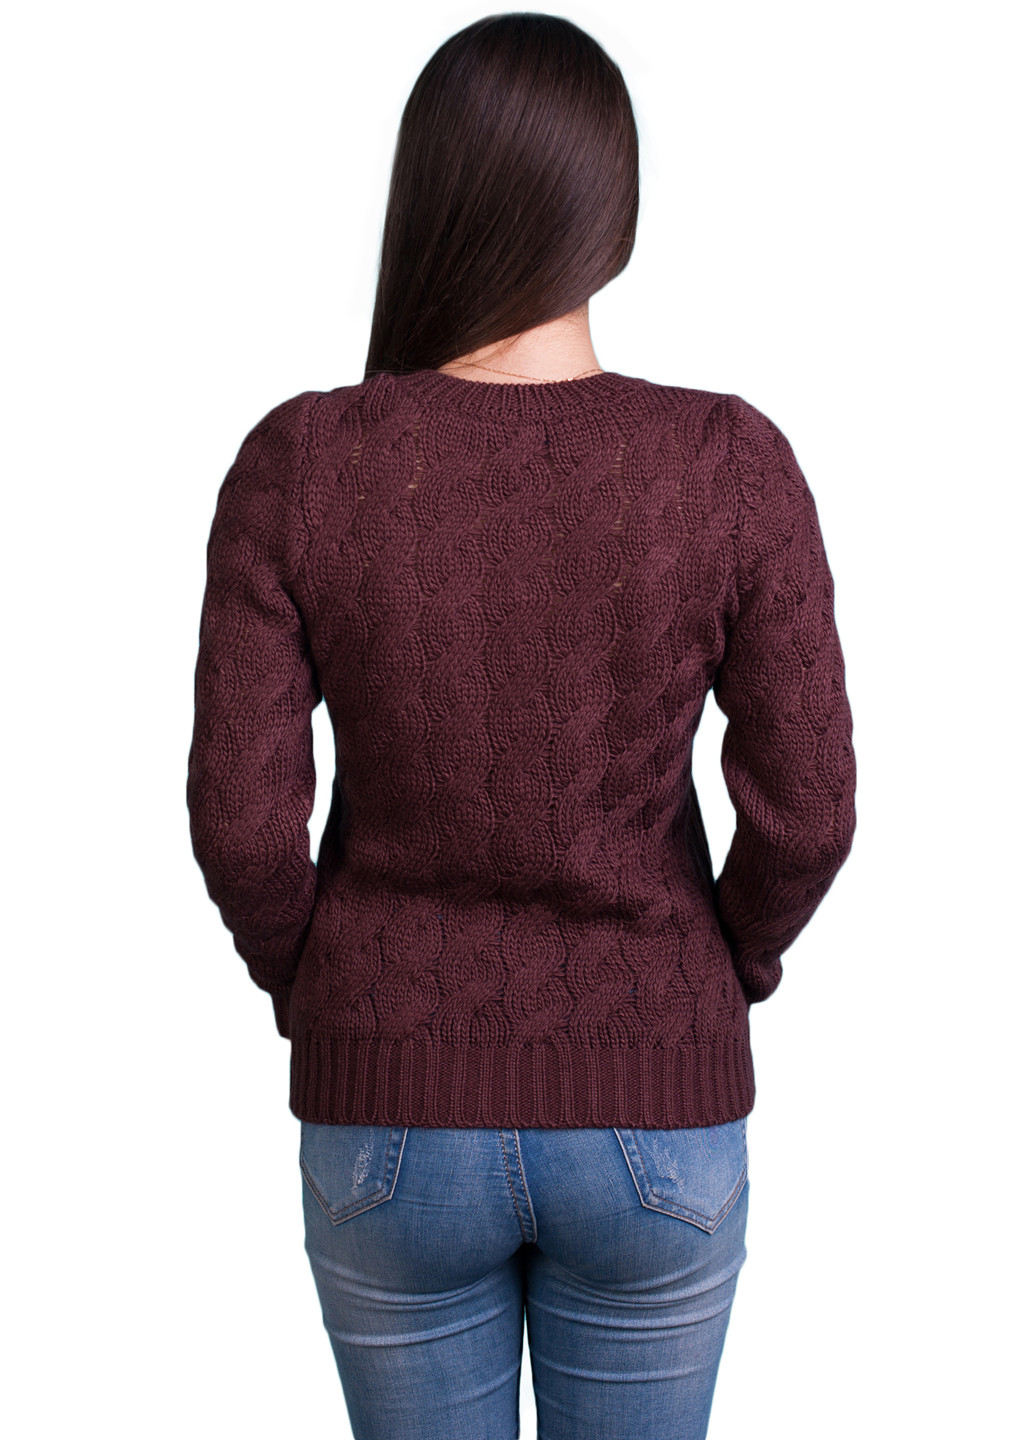 Коричневый демисезонный пуловер пуловер Bakhur